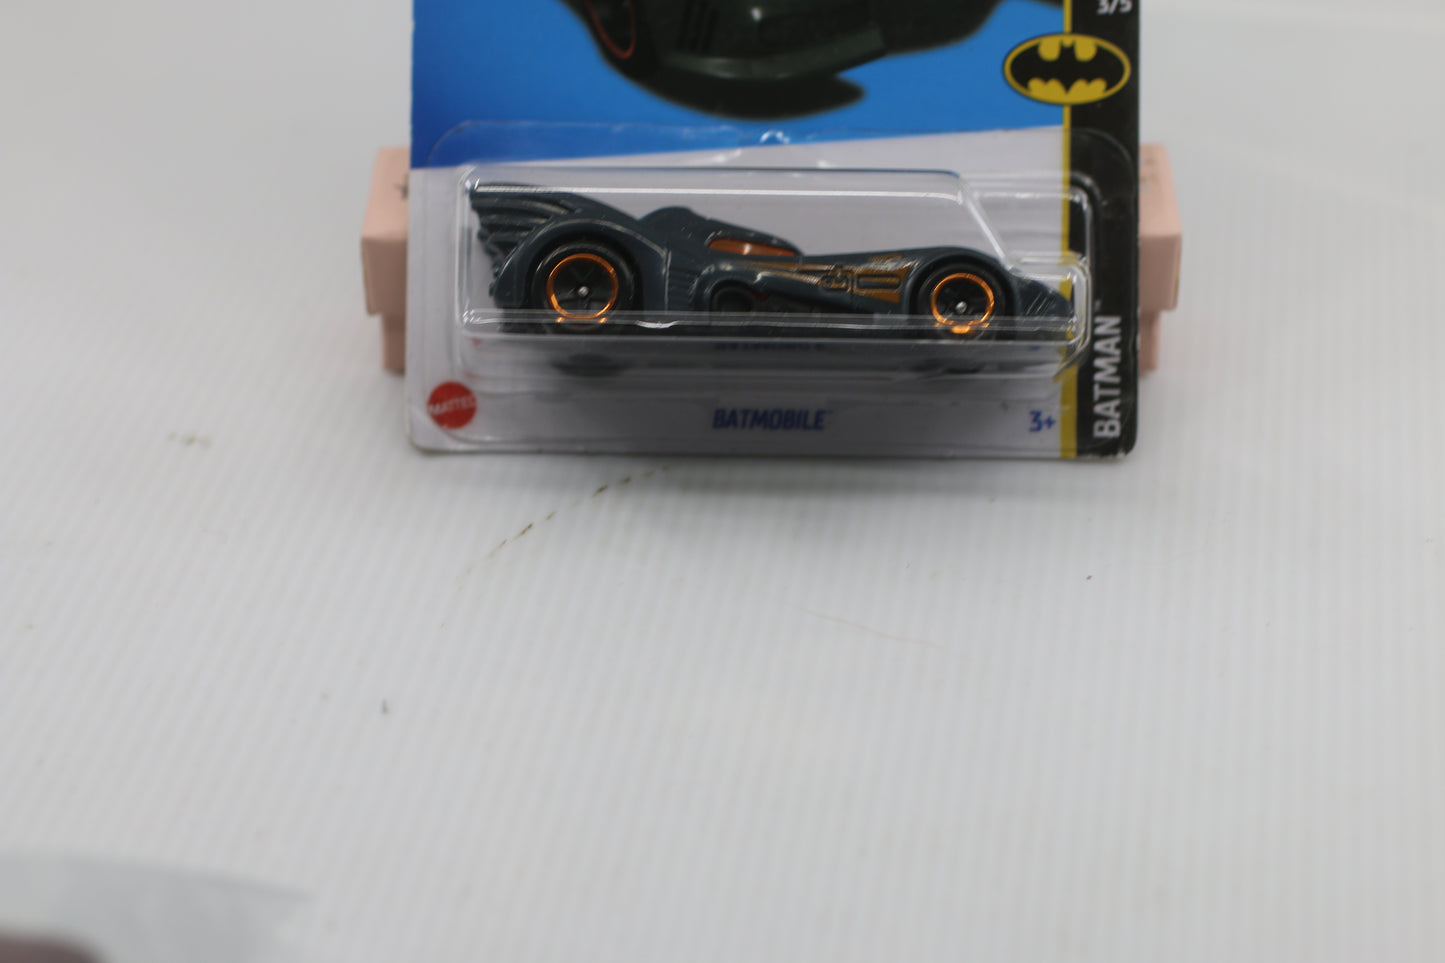 Mattel Hot Wheels Batmobile 103/250 HW Batman Series 3/5 1:64 Gotham  #3